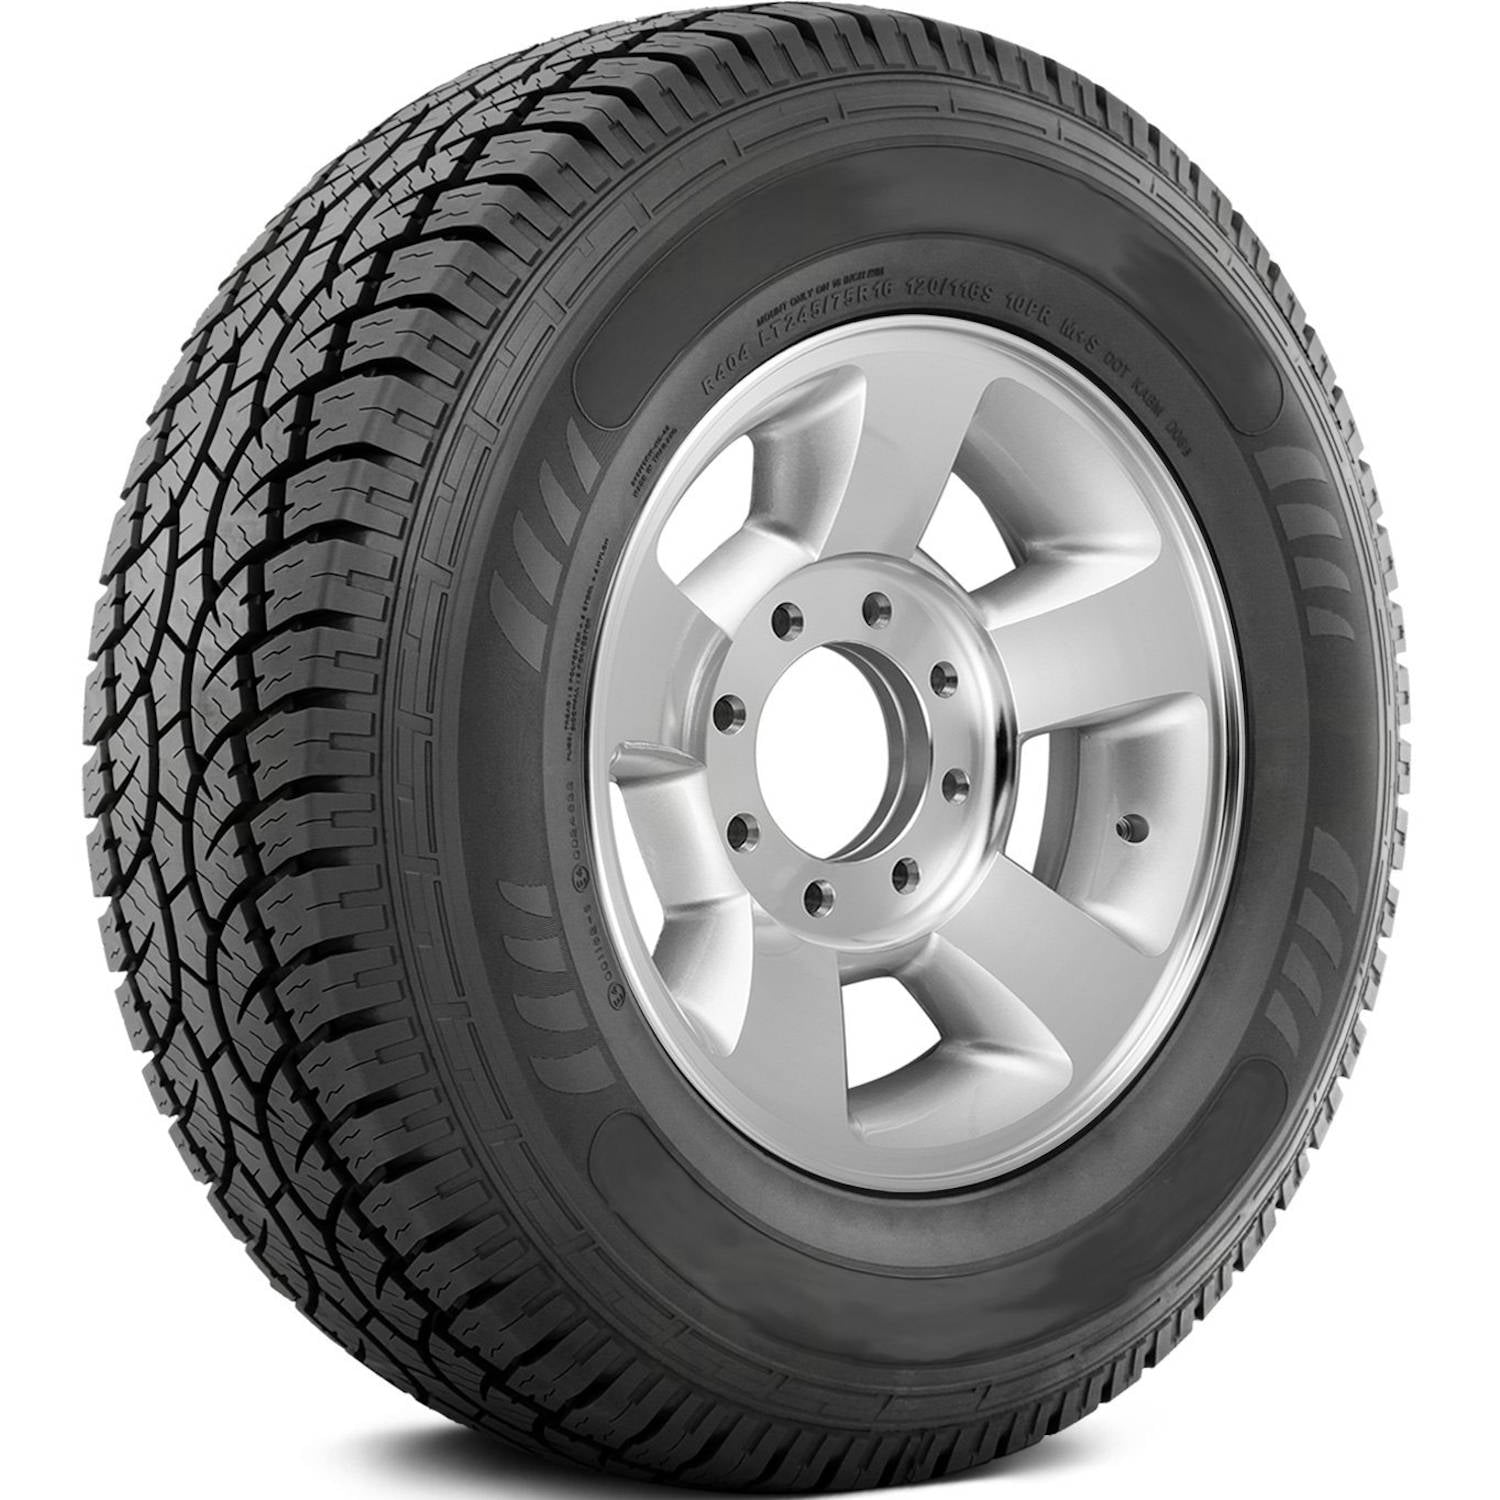 AMERICUS RUGGED ALL TERRAIN 265/65R17 (30.6X10.4R 17) Tires